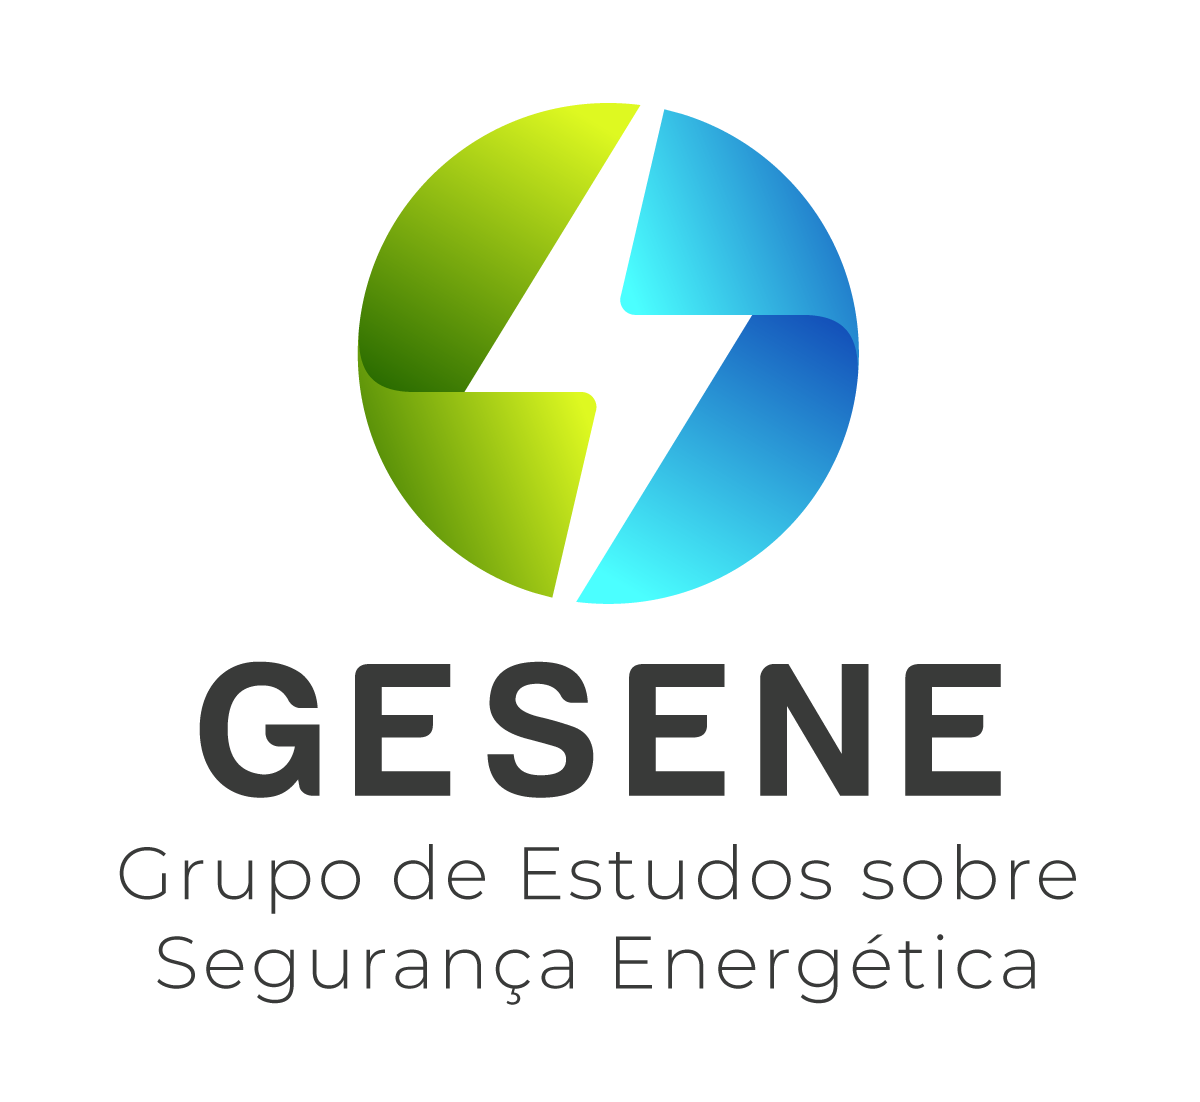 GESENE - Grupo de Estudos sobre Segurança Energética